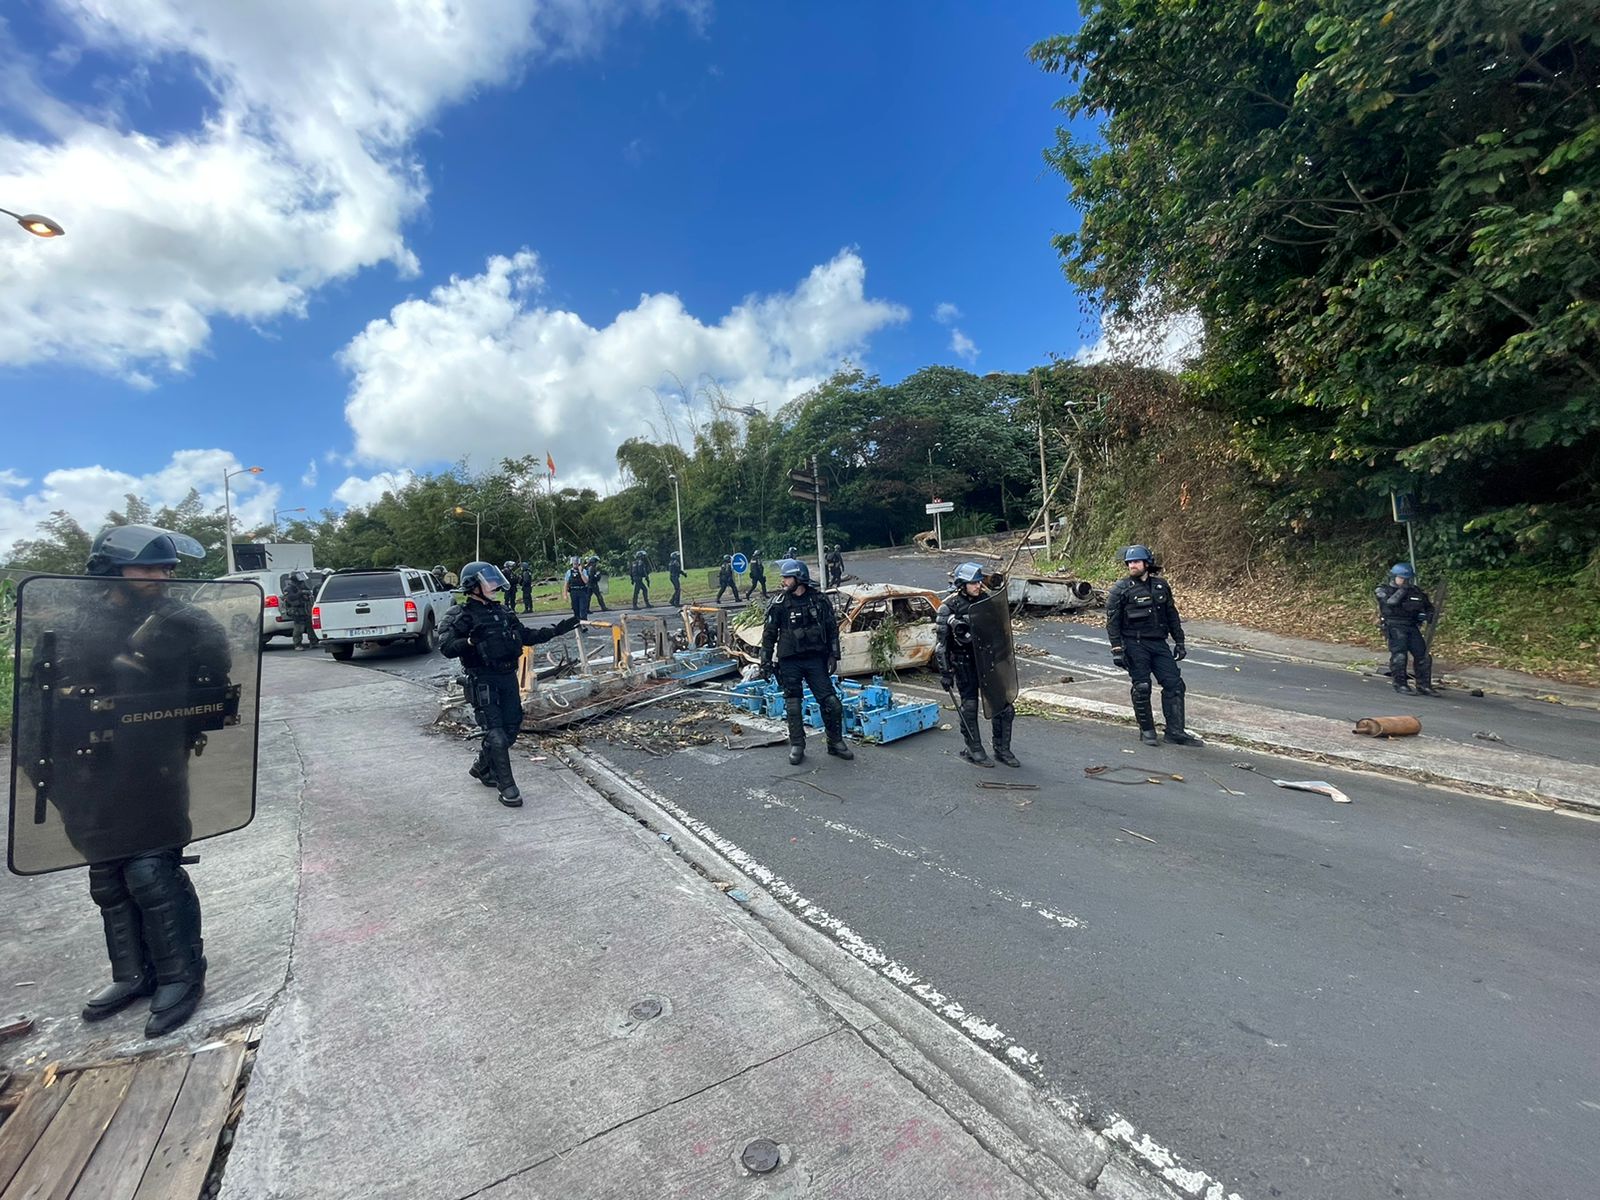     De nombreux rond-points débloqués et des stations services réapprovisionnées aujourd'hui en Martinique

